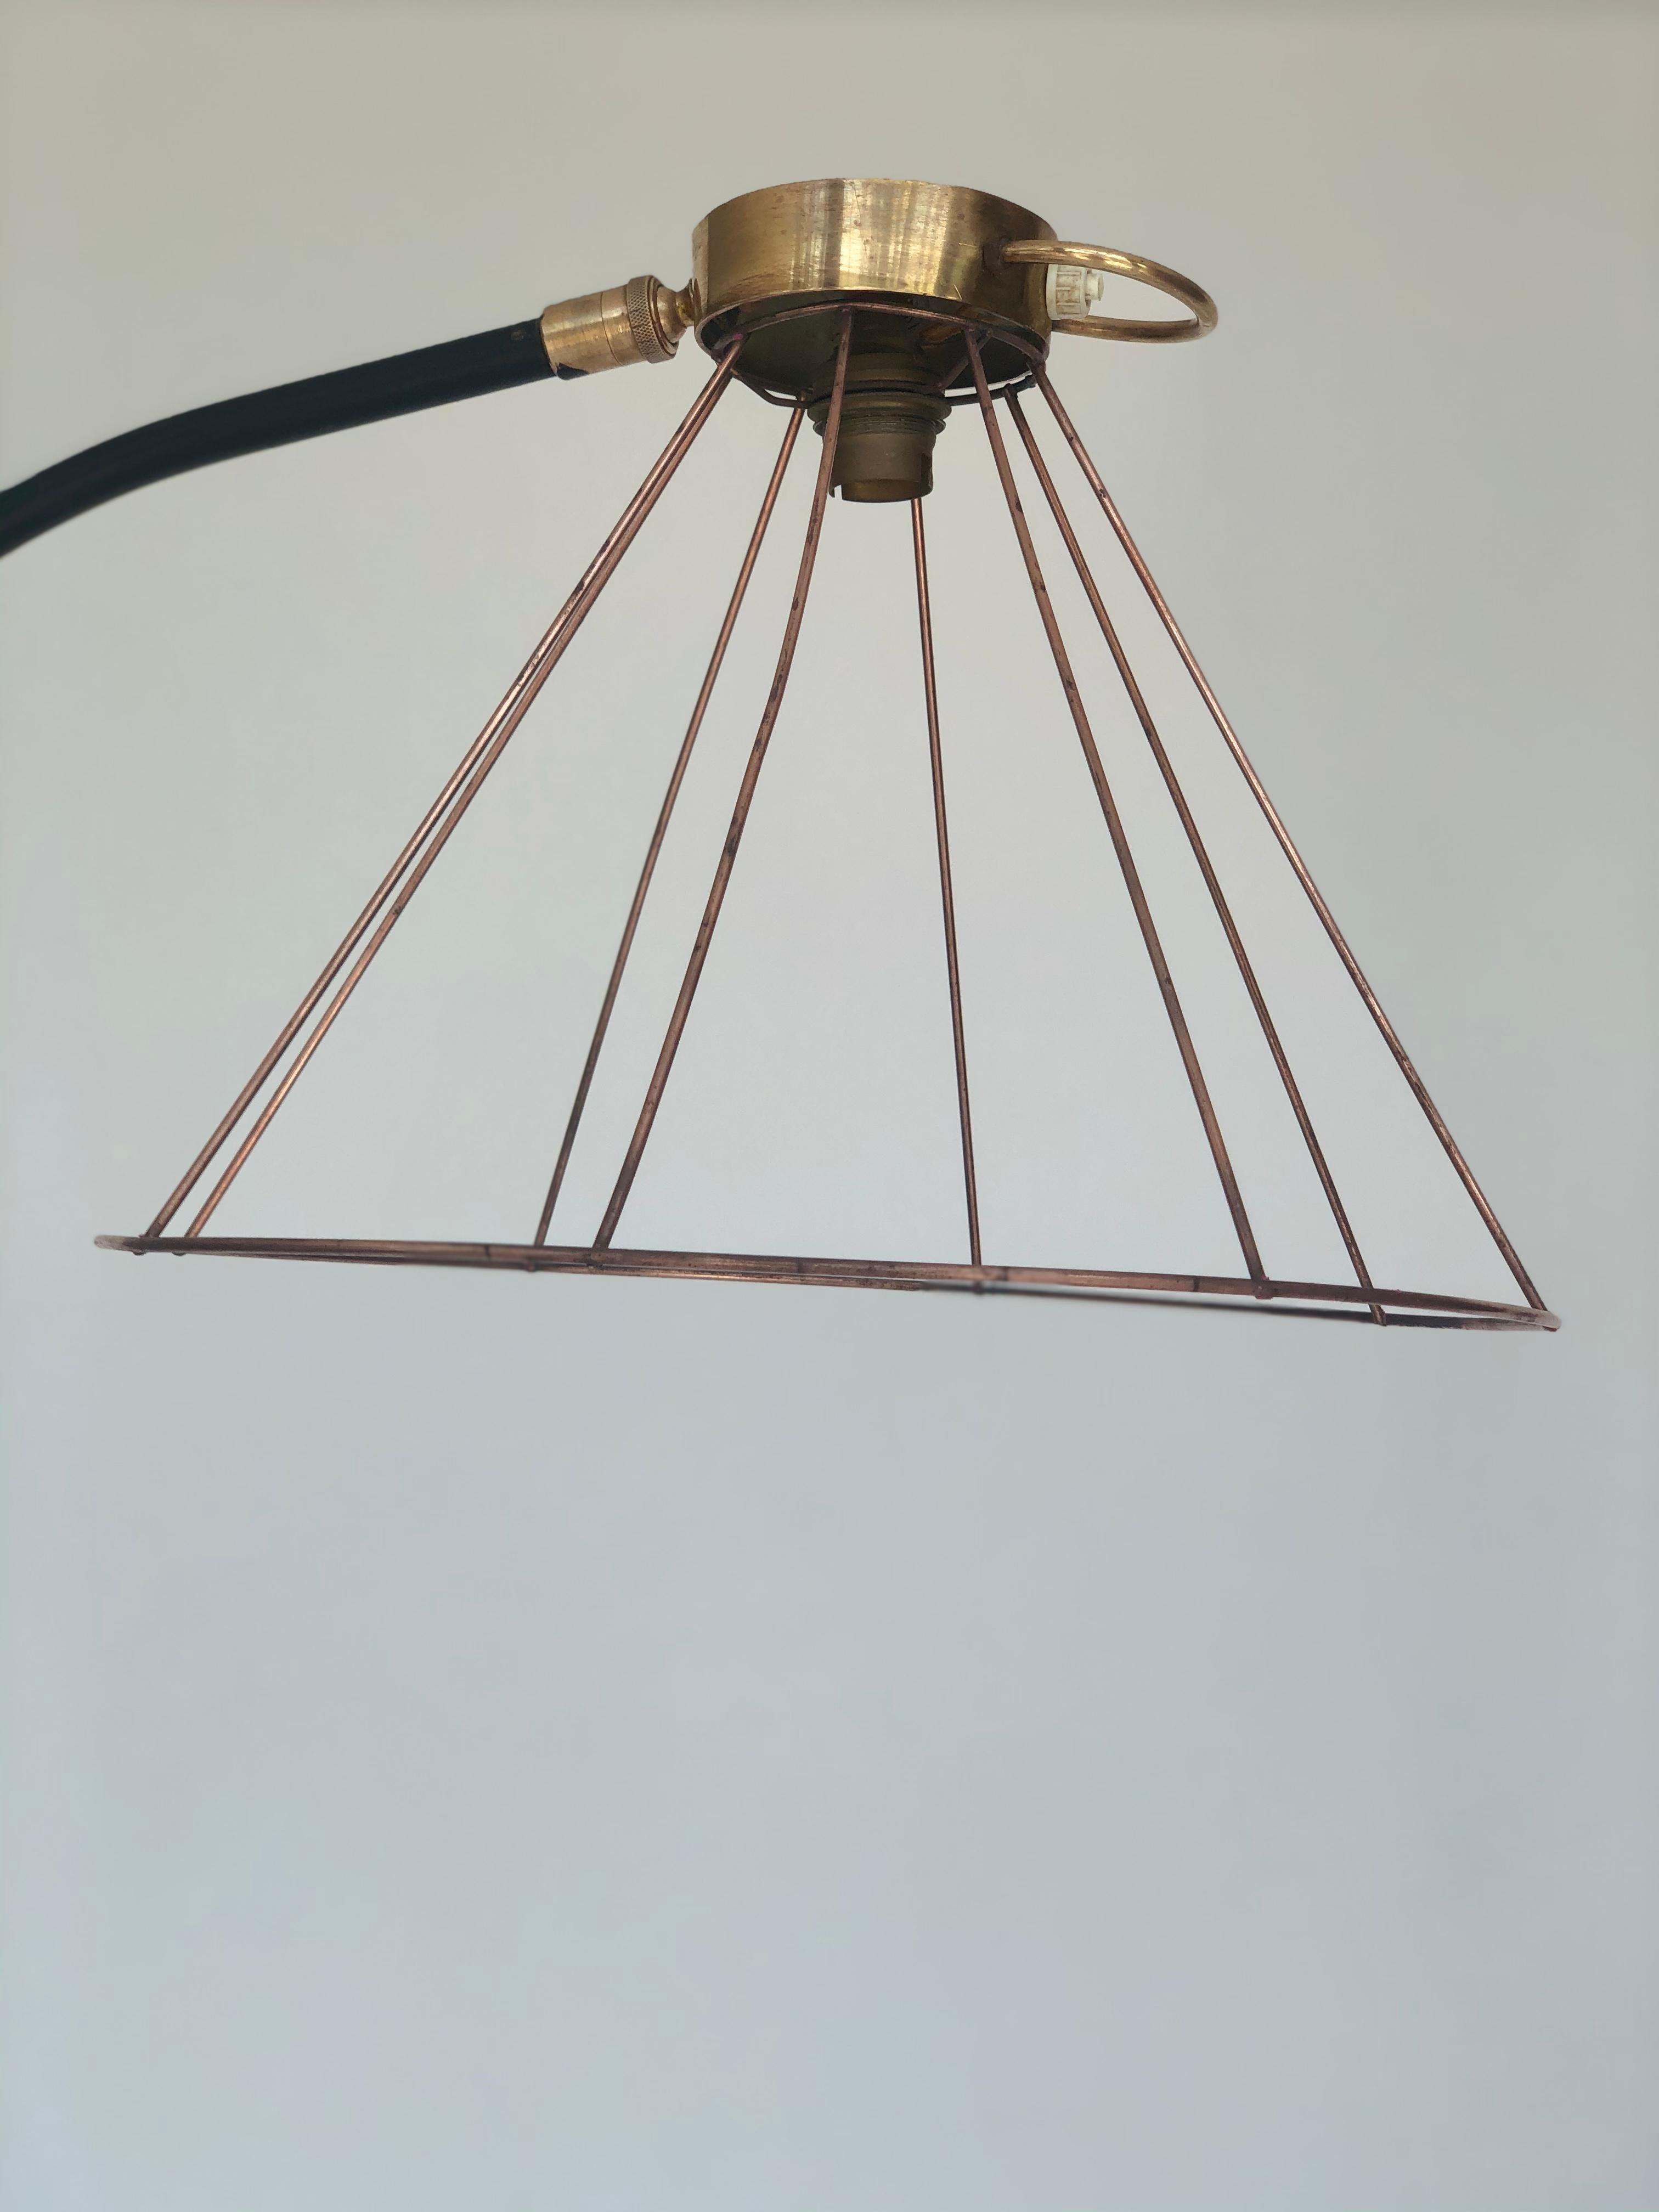 Lampadaire porte revue en fer forgé et et laiton, ampoule apparente 1960.